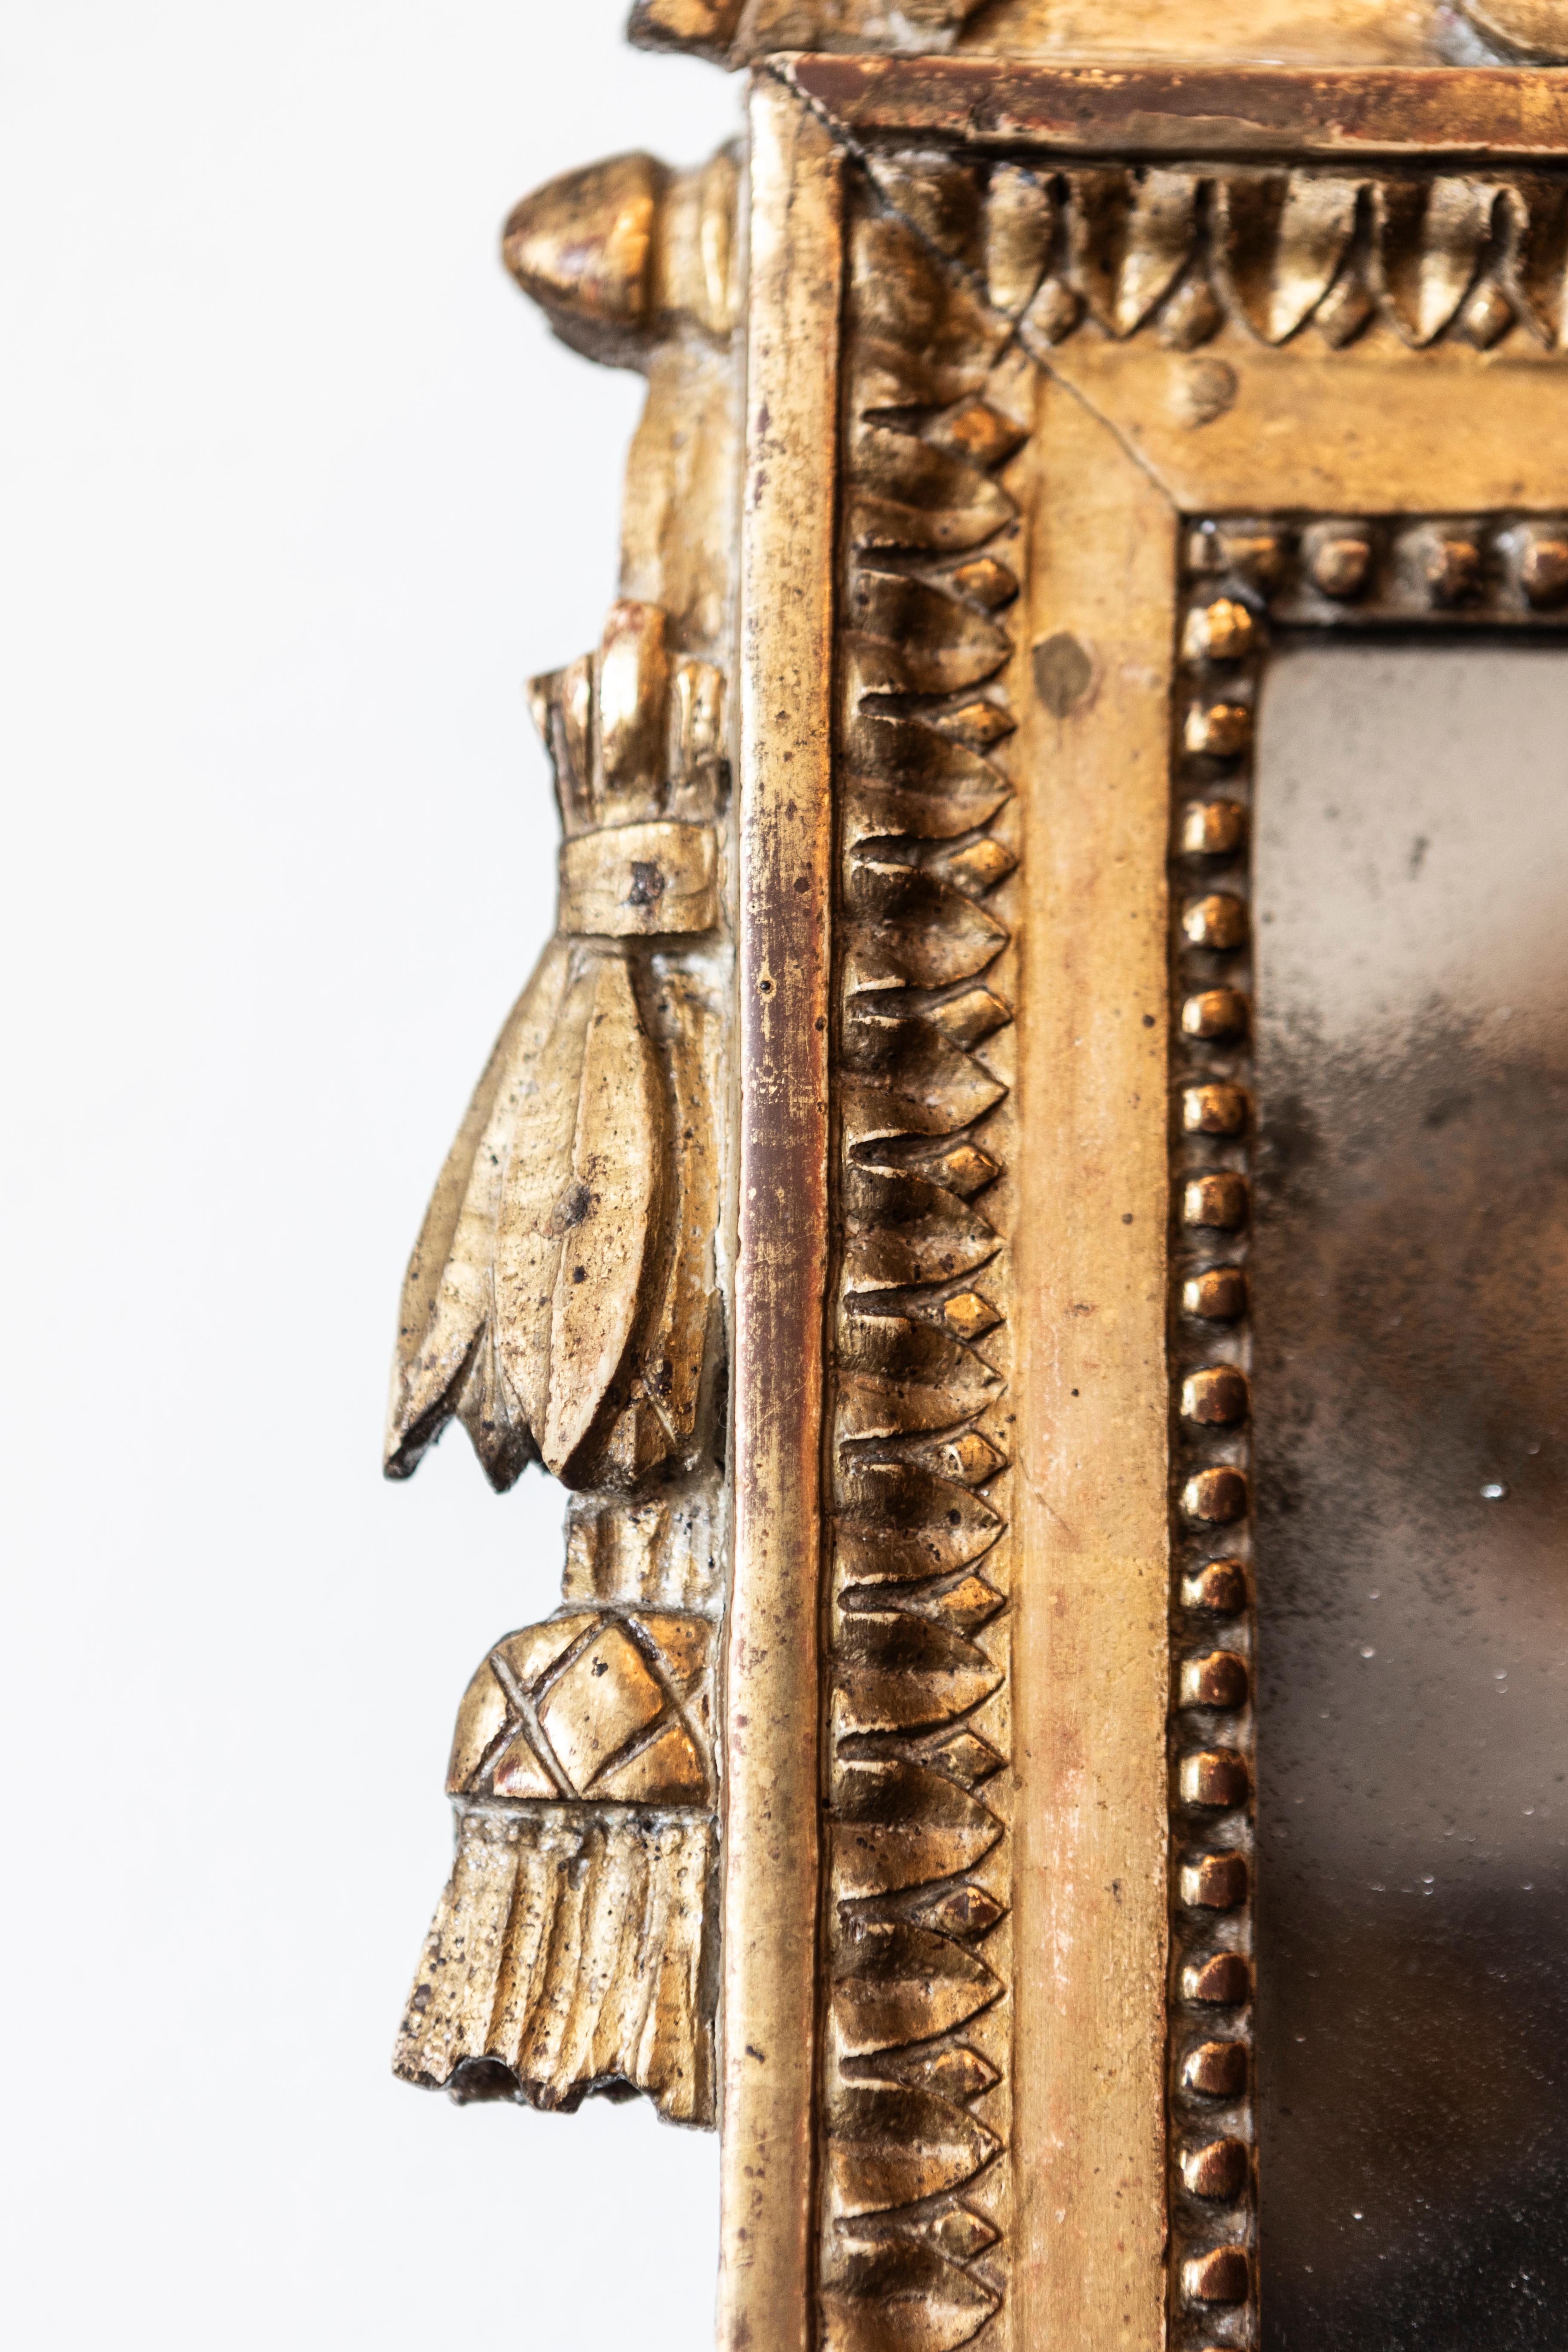 Miroir en bois doré d'époque Louis XVI, vers 1790, avec une crête sculptée représentant un oiseau et des drapeaux. Ce miroir en bois doré d'époque Louis XVI, datant d'environ 1790, est un chef-d'œuvre d'artisanat et d'élégance. Le miroir présente un